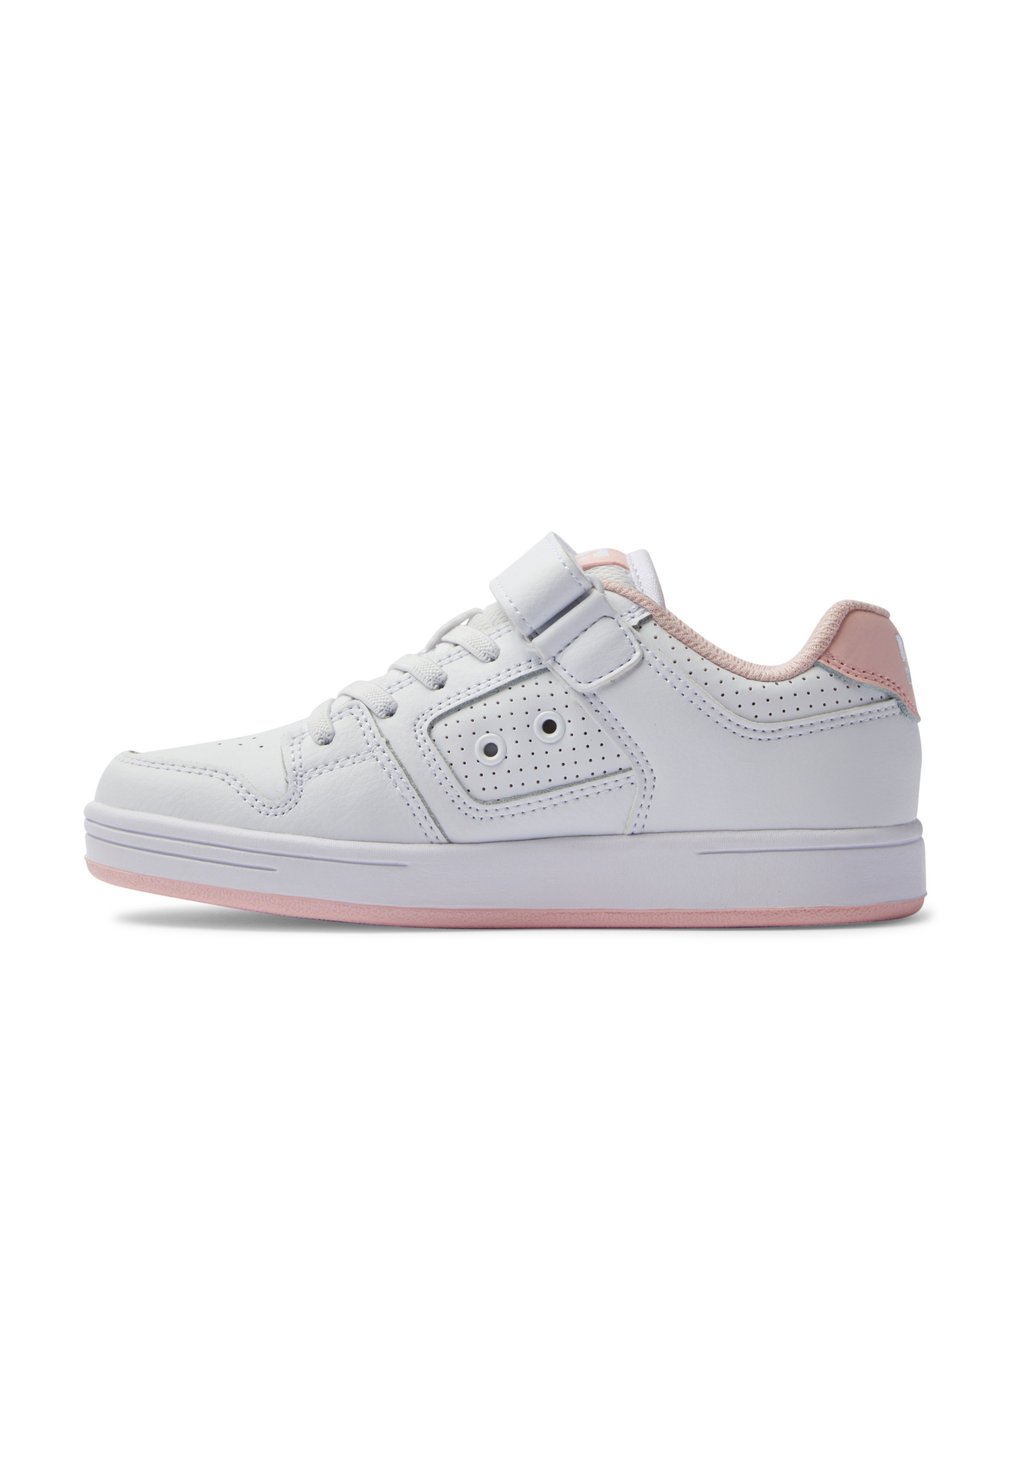 Низкие кеды Manteca 4 V Wpn DC Shoes, цвет white/pink